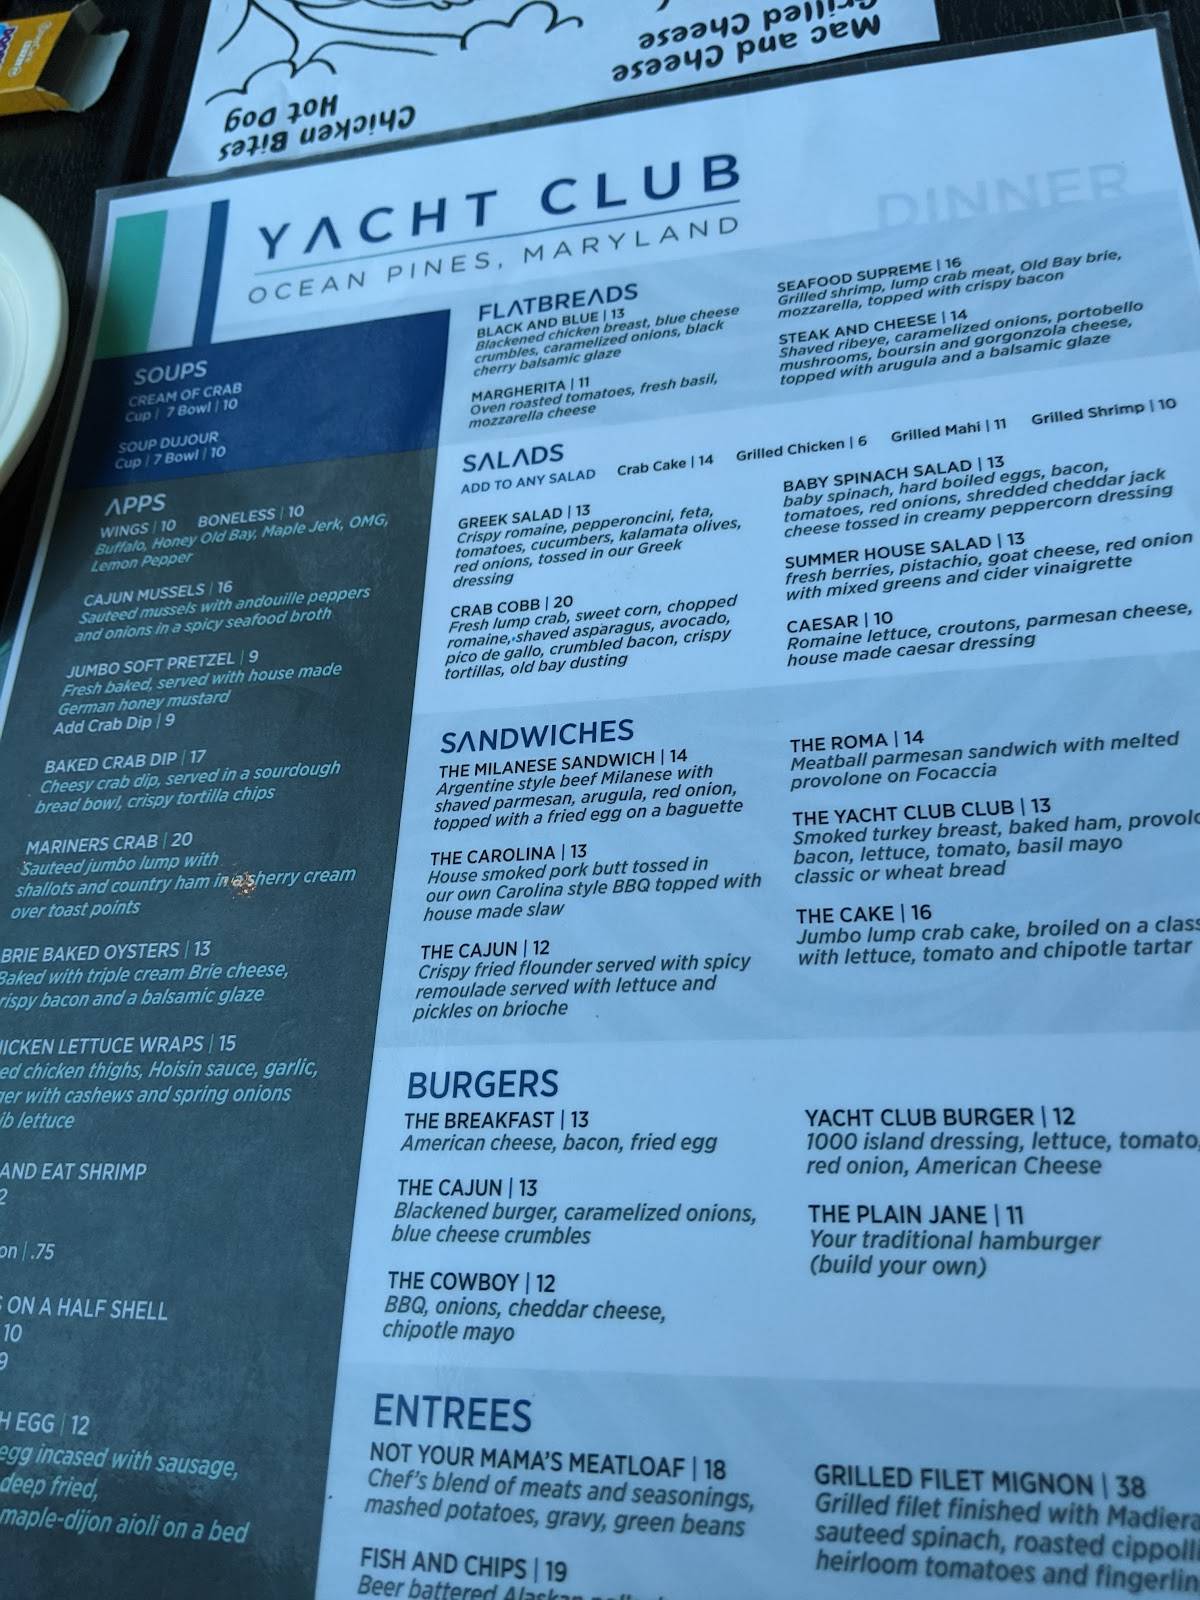 Ocean Pines Yacht Club menu